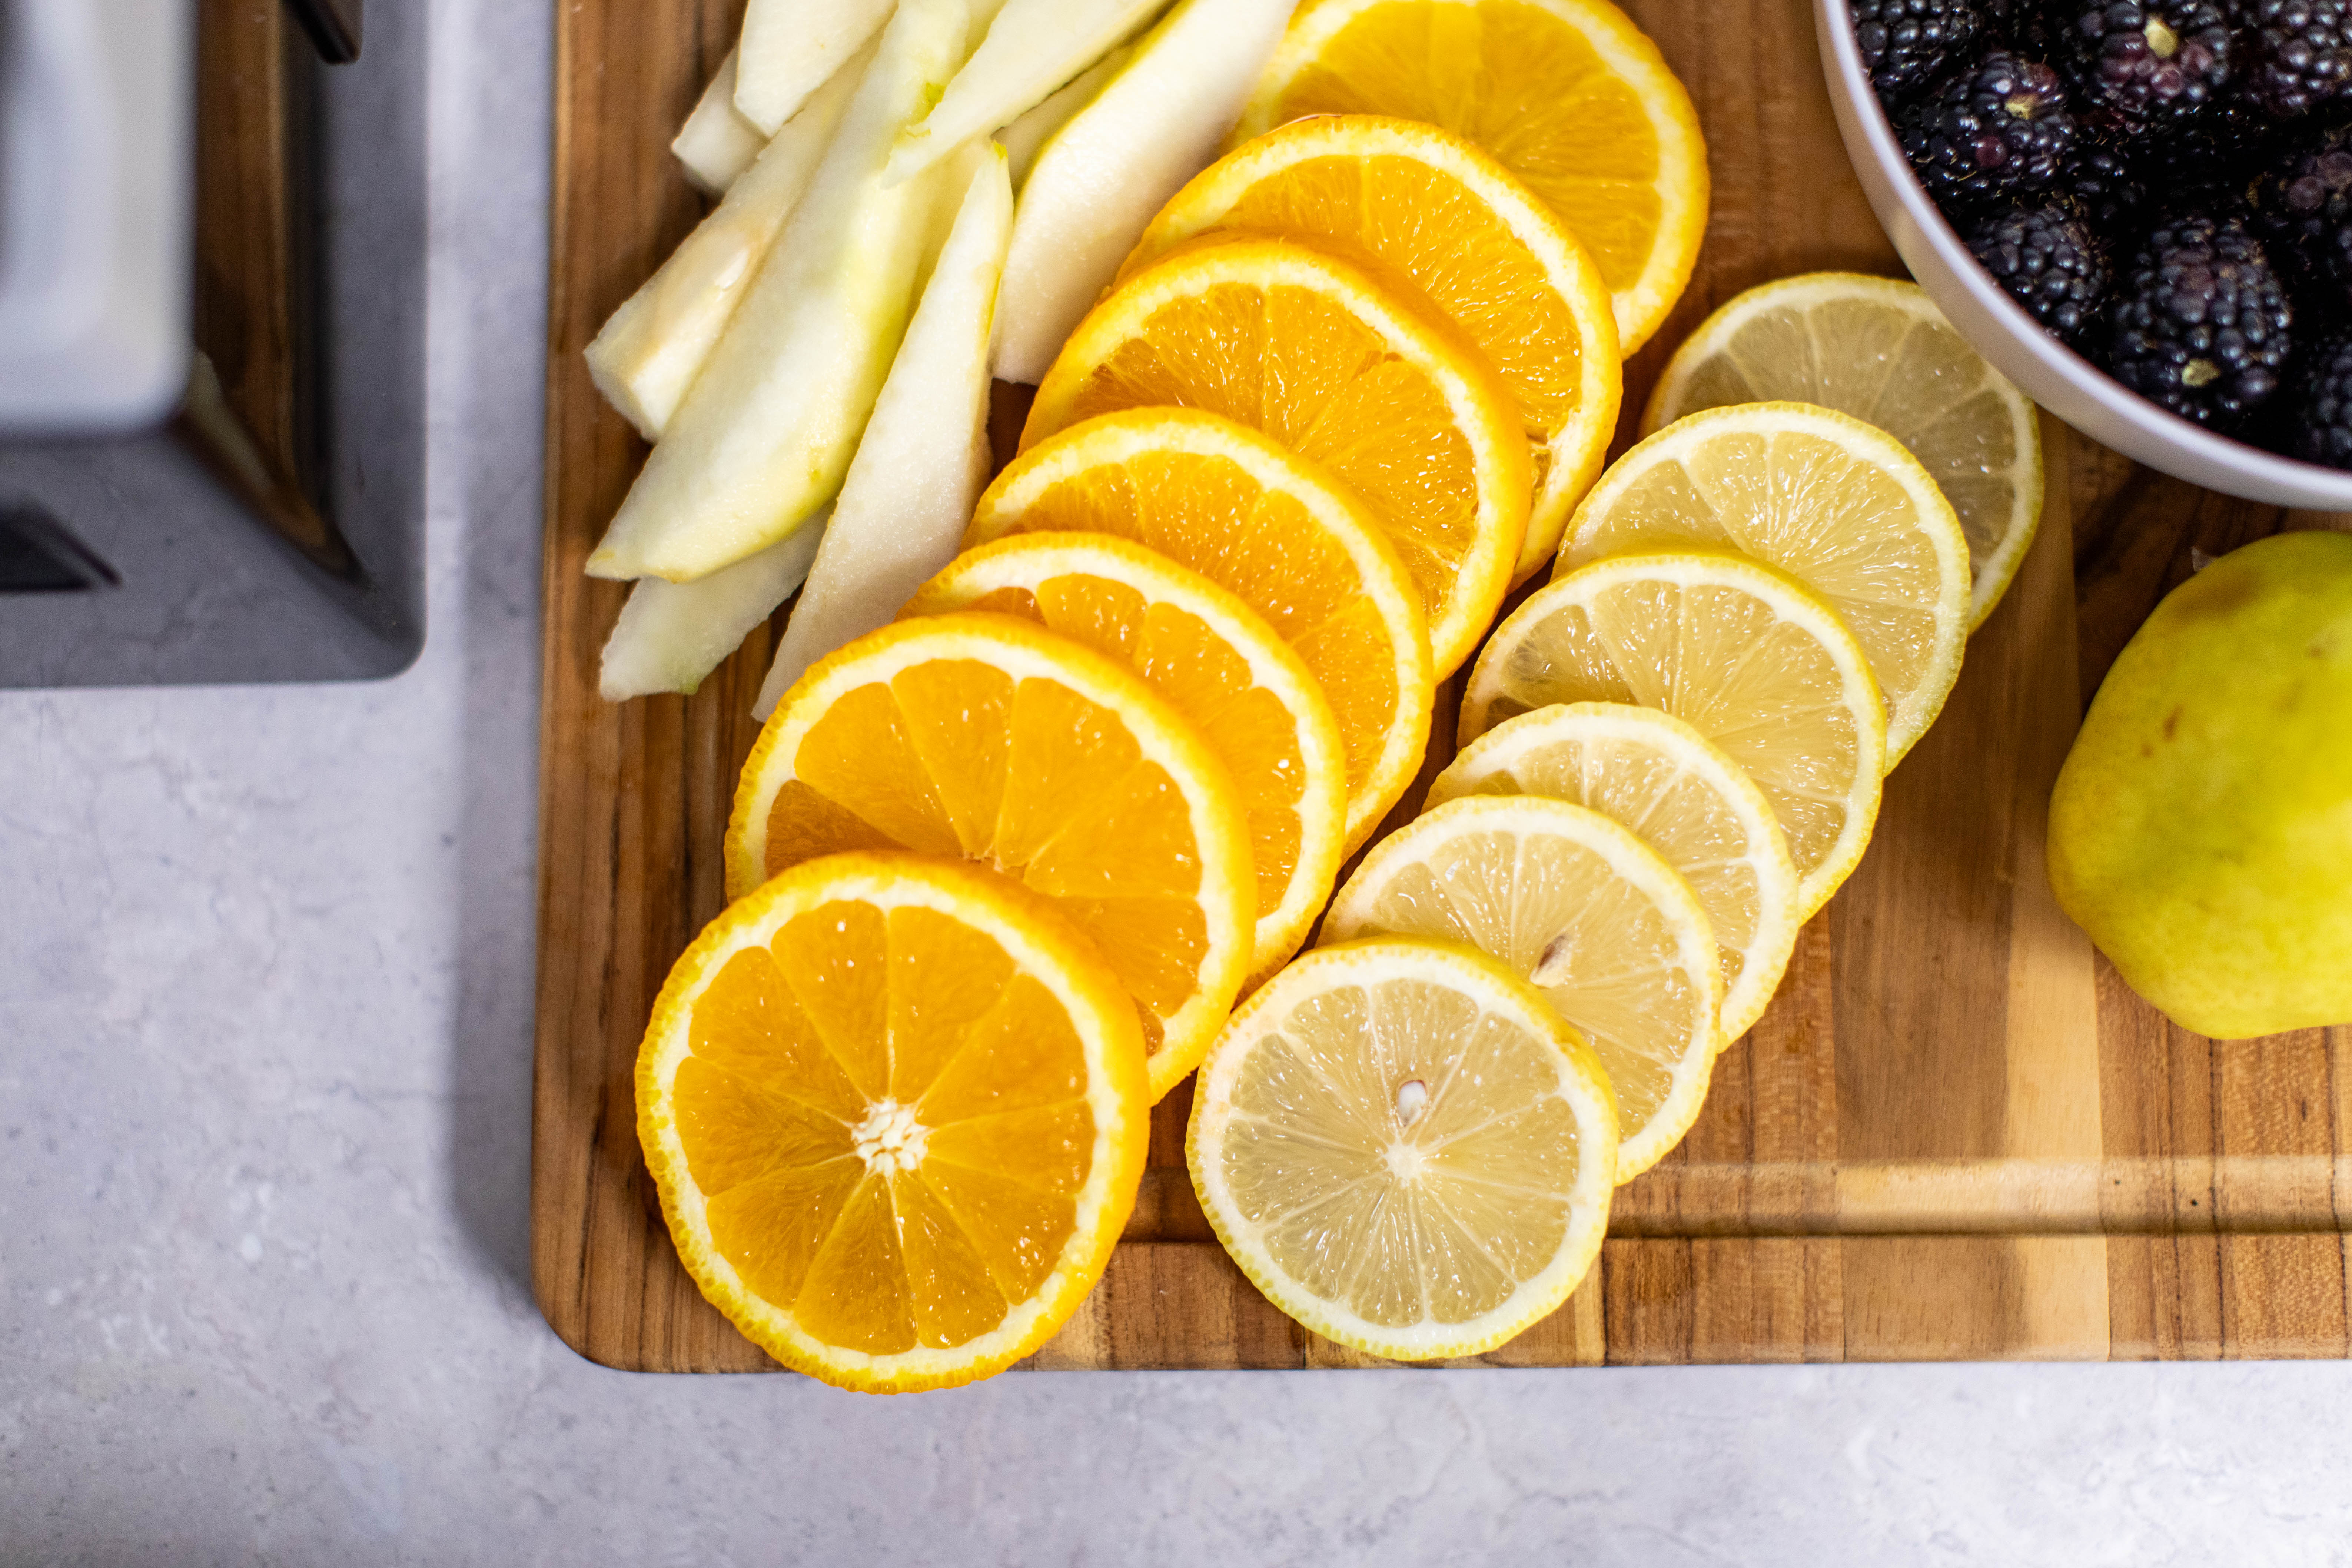 Zesty Fruit Medley: Sliced Pears, Oranges, and Lemons